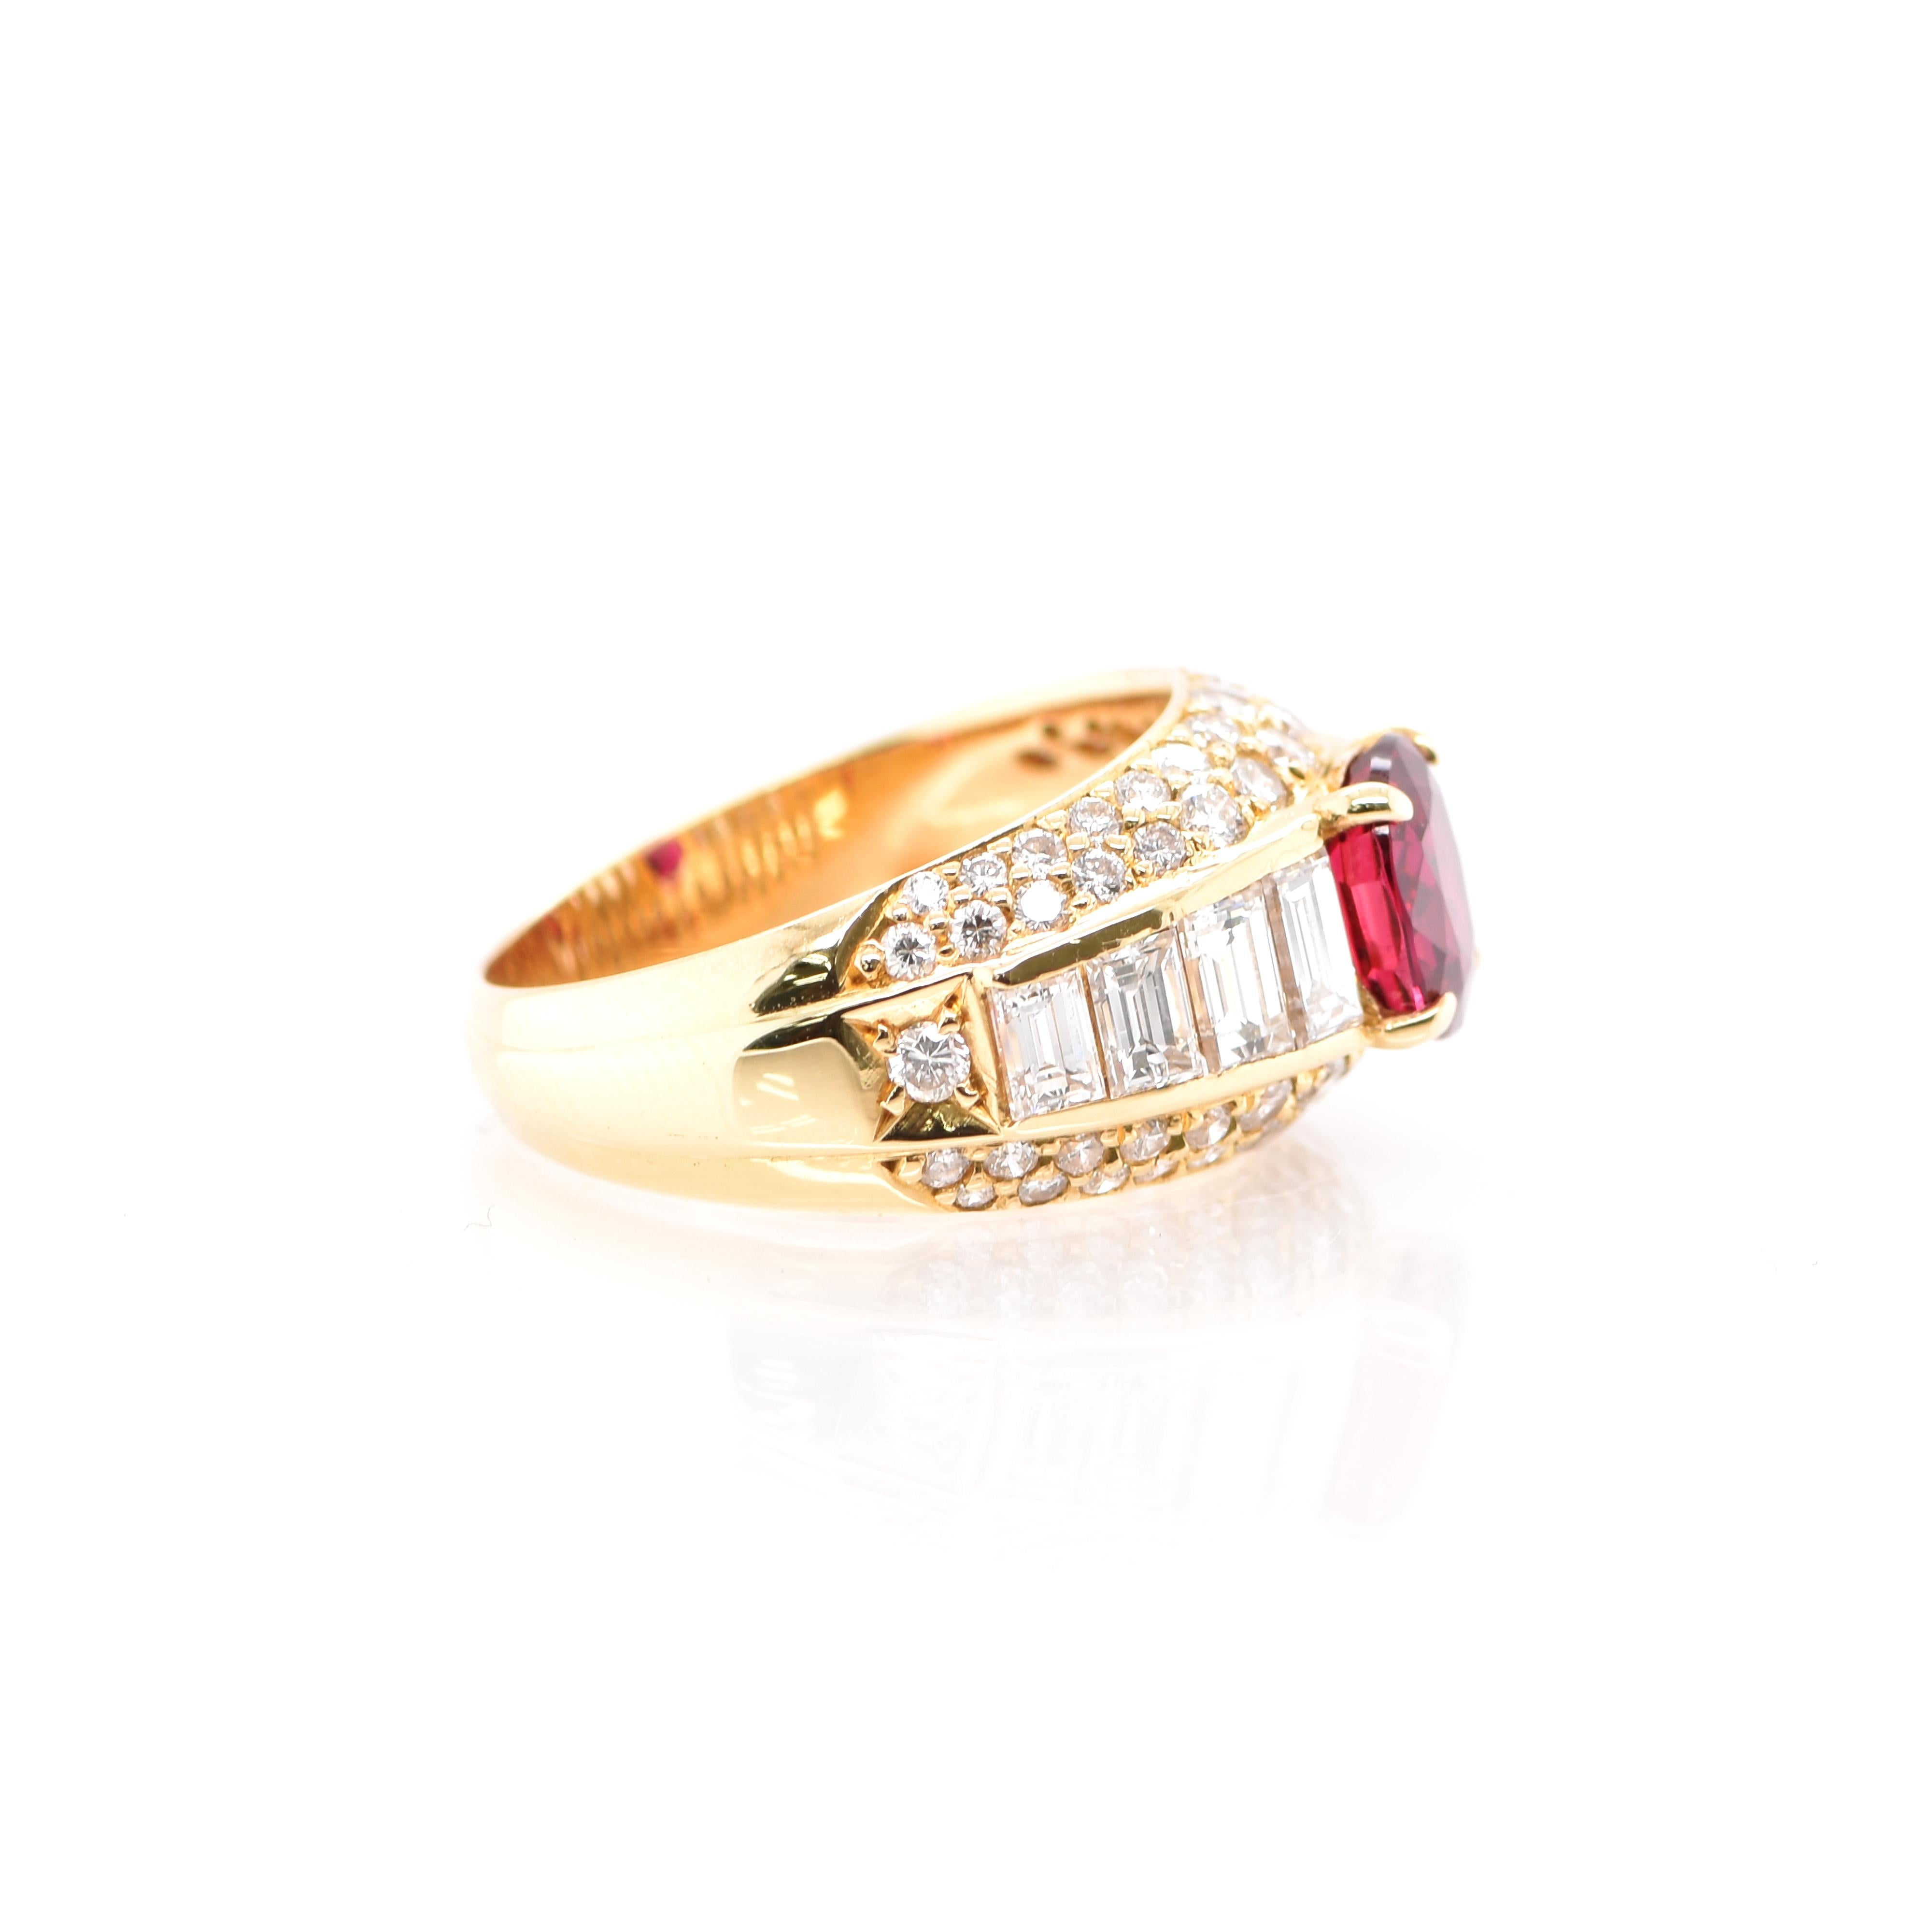 Women's 1.48 Carat Ruby and Diamond Band Ring Set in 18 Karat Gold